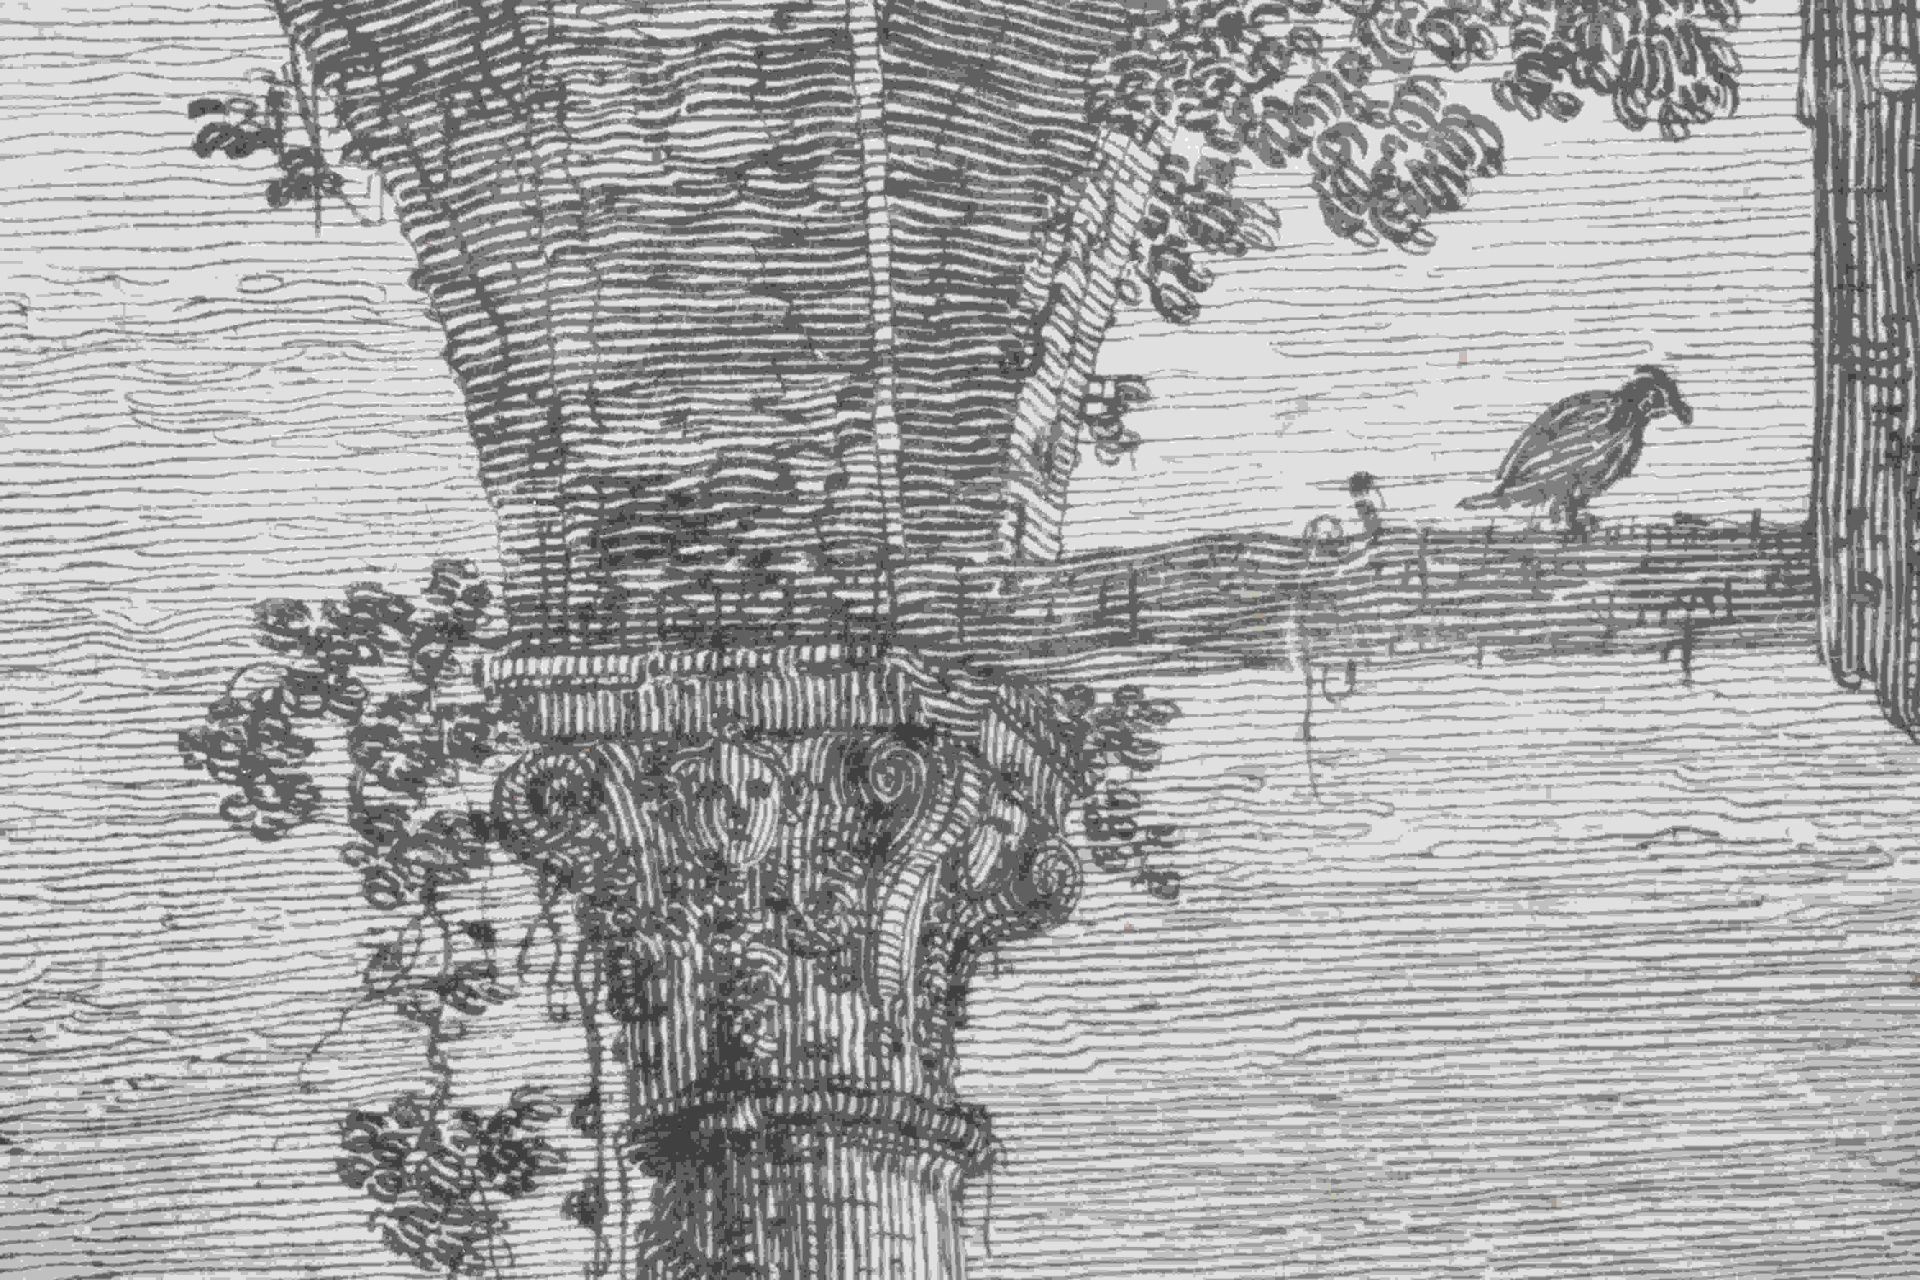 Canal, Giovanni Antonio, gen. Canaletto: Il portico con la lanterna - Image 22 of 24